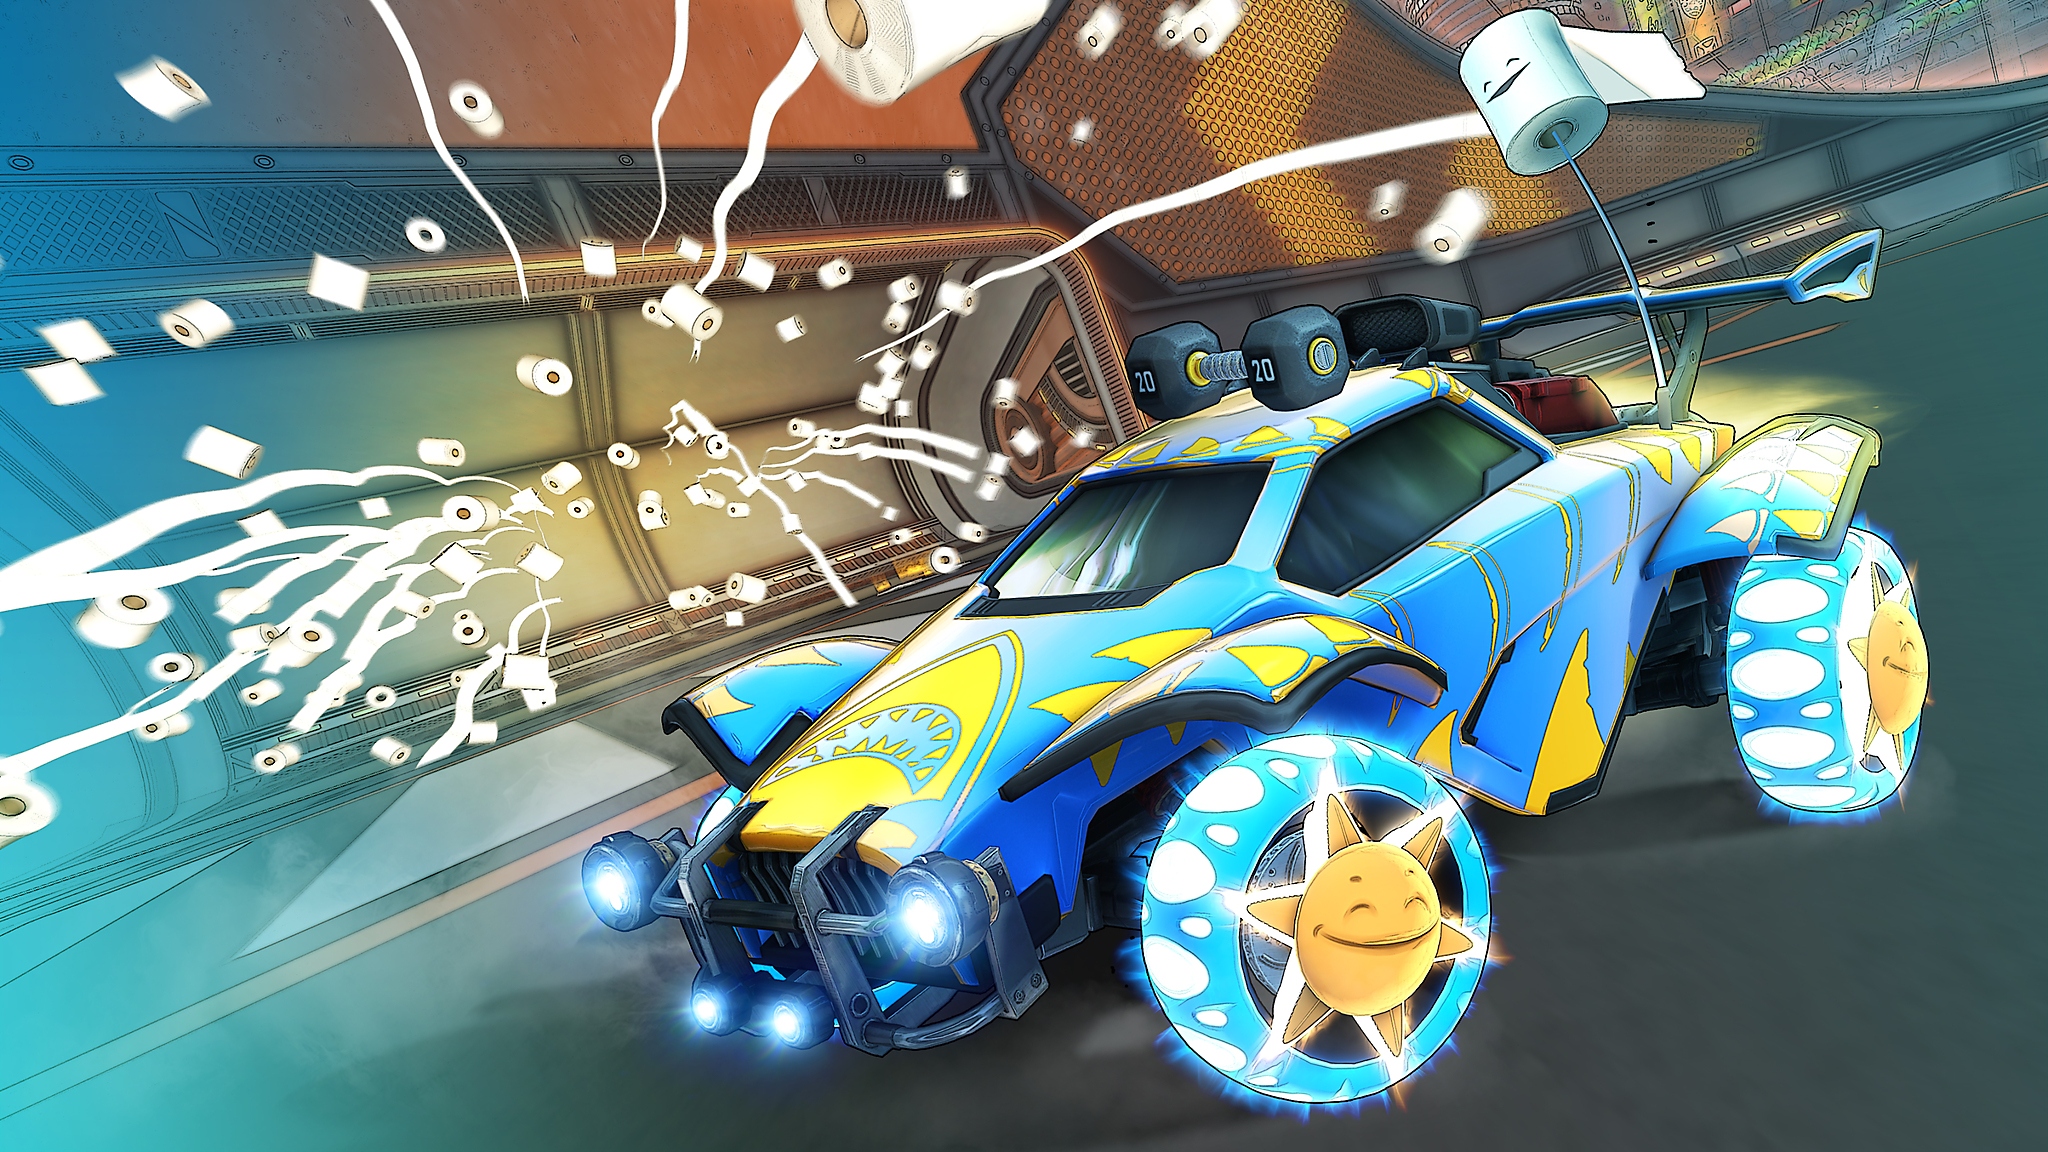 Rocket League - Season 6-skærmbillede, der viser en blå og gul bil med flere toiletruller, der kastes igennem luften